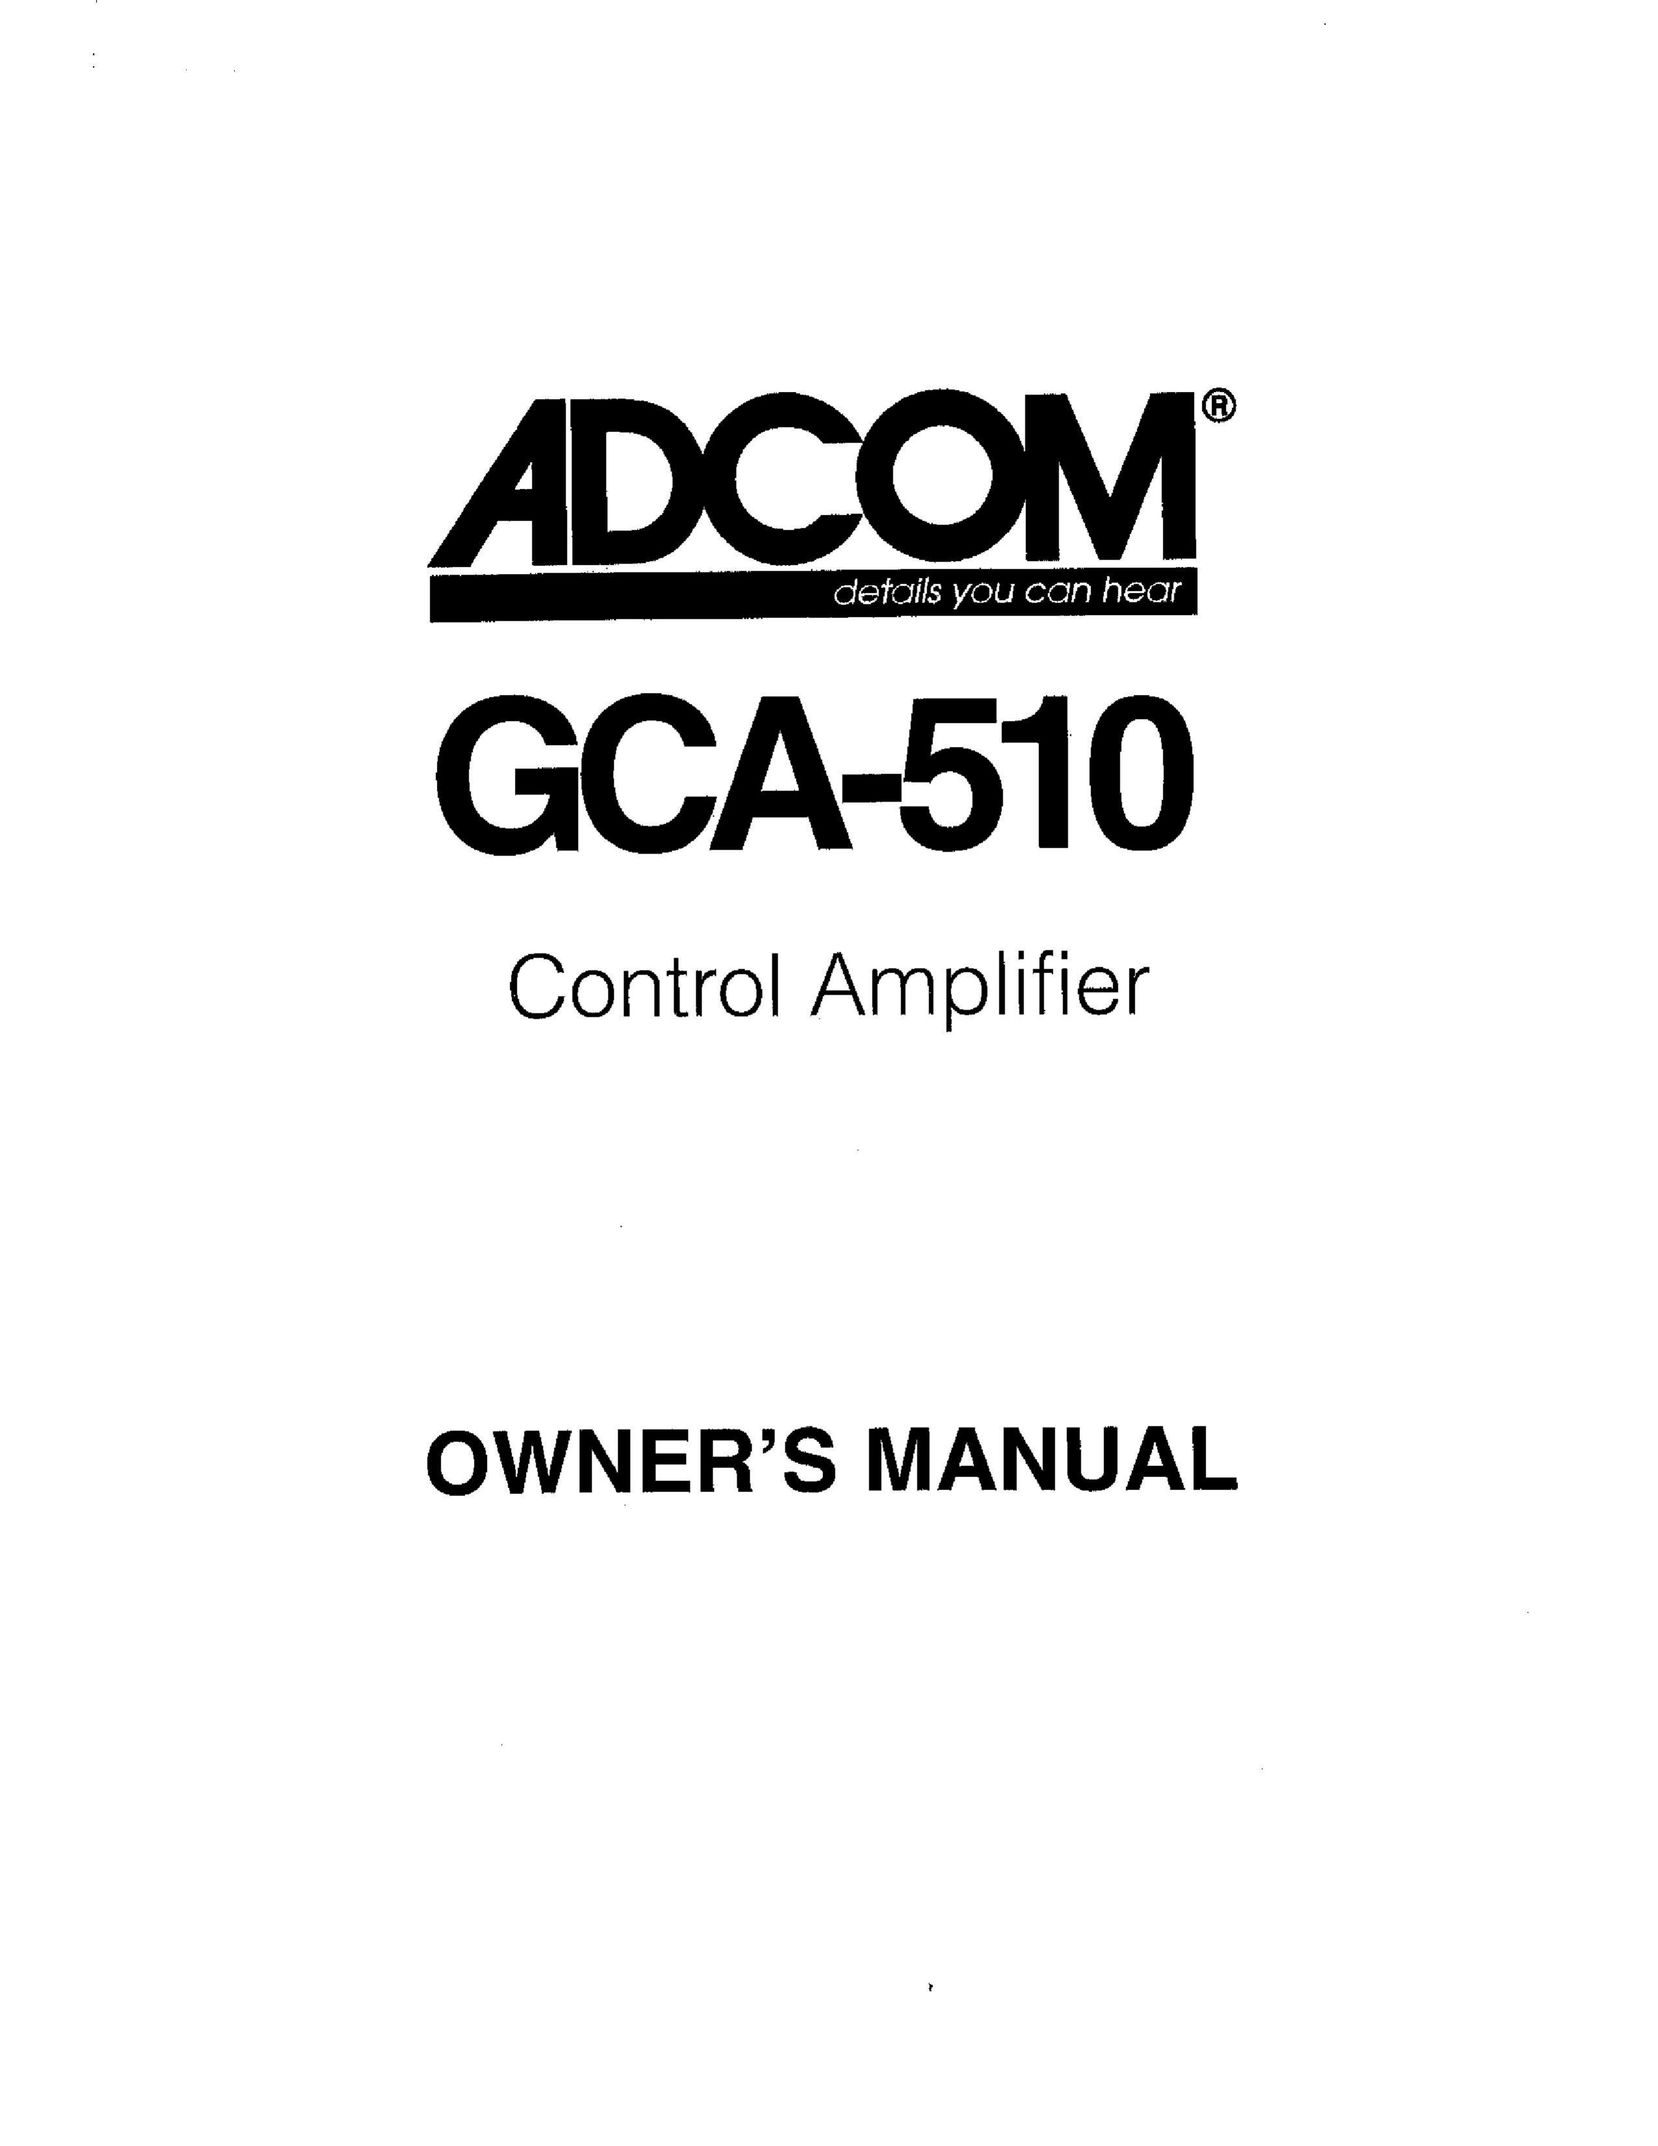 Adcom GCA-510 Stereo Amplifier User Manual